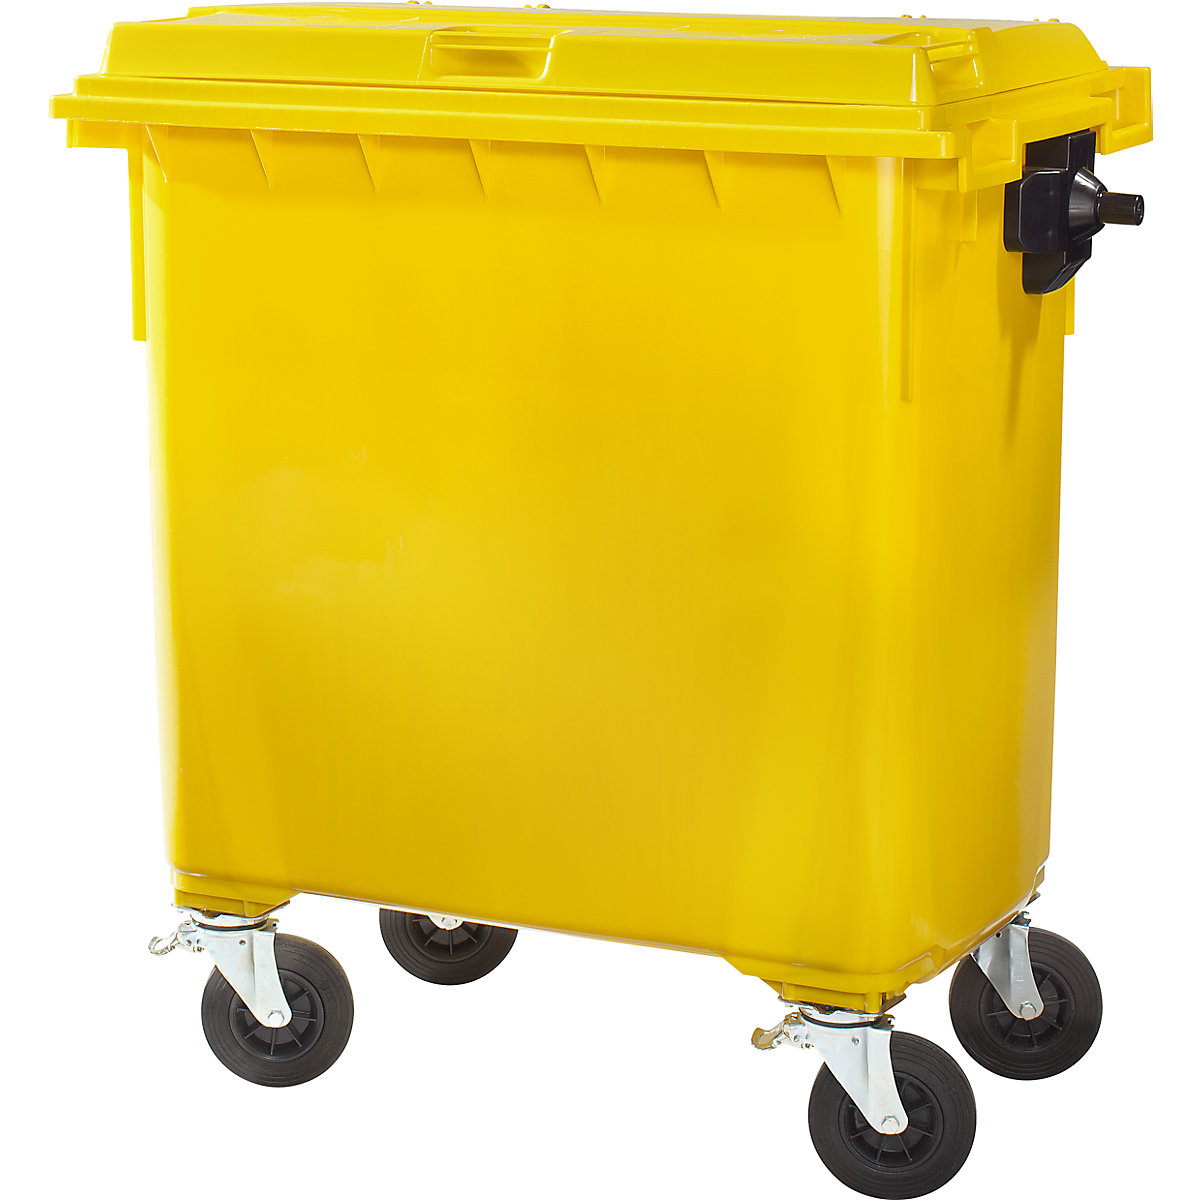 Müllcontainer aus Kunststoff, DIN EN 840, Volumen 660 l, BxHxT 1360 x 1235 x 765 mm, gelb